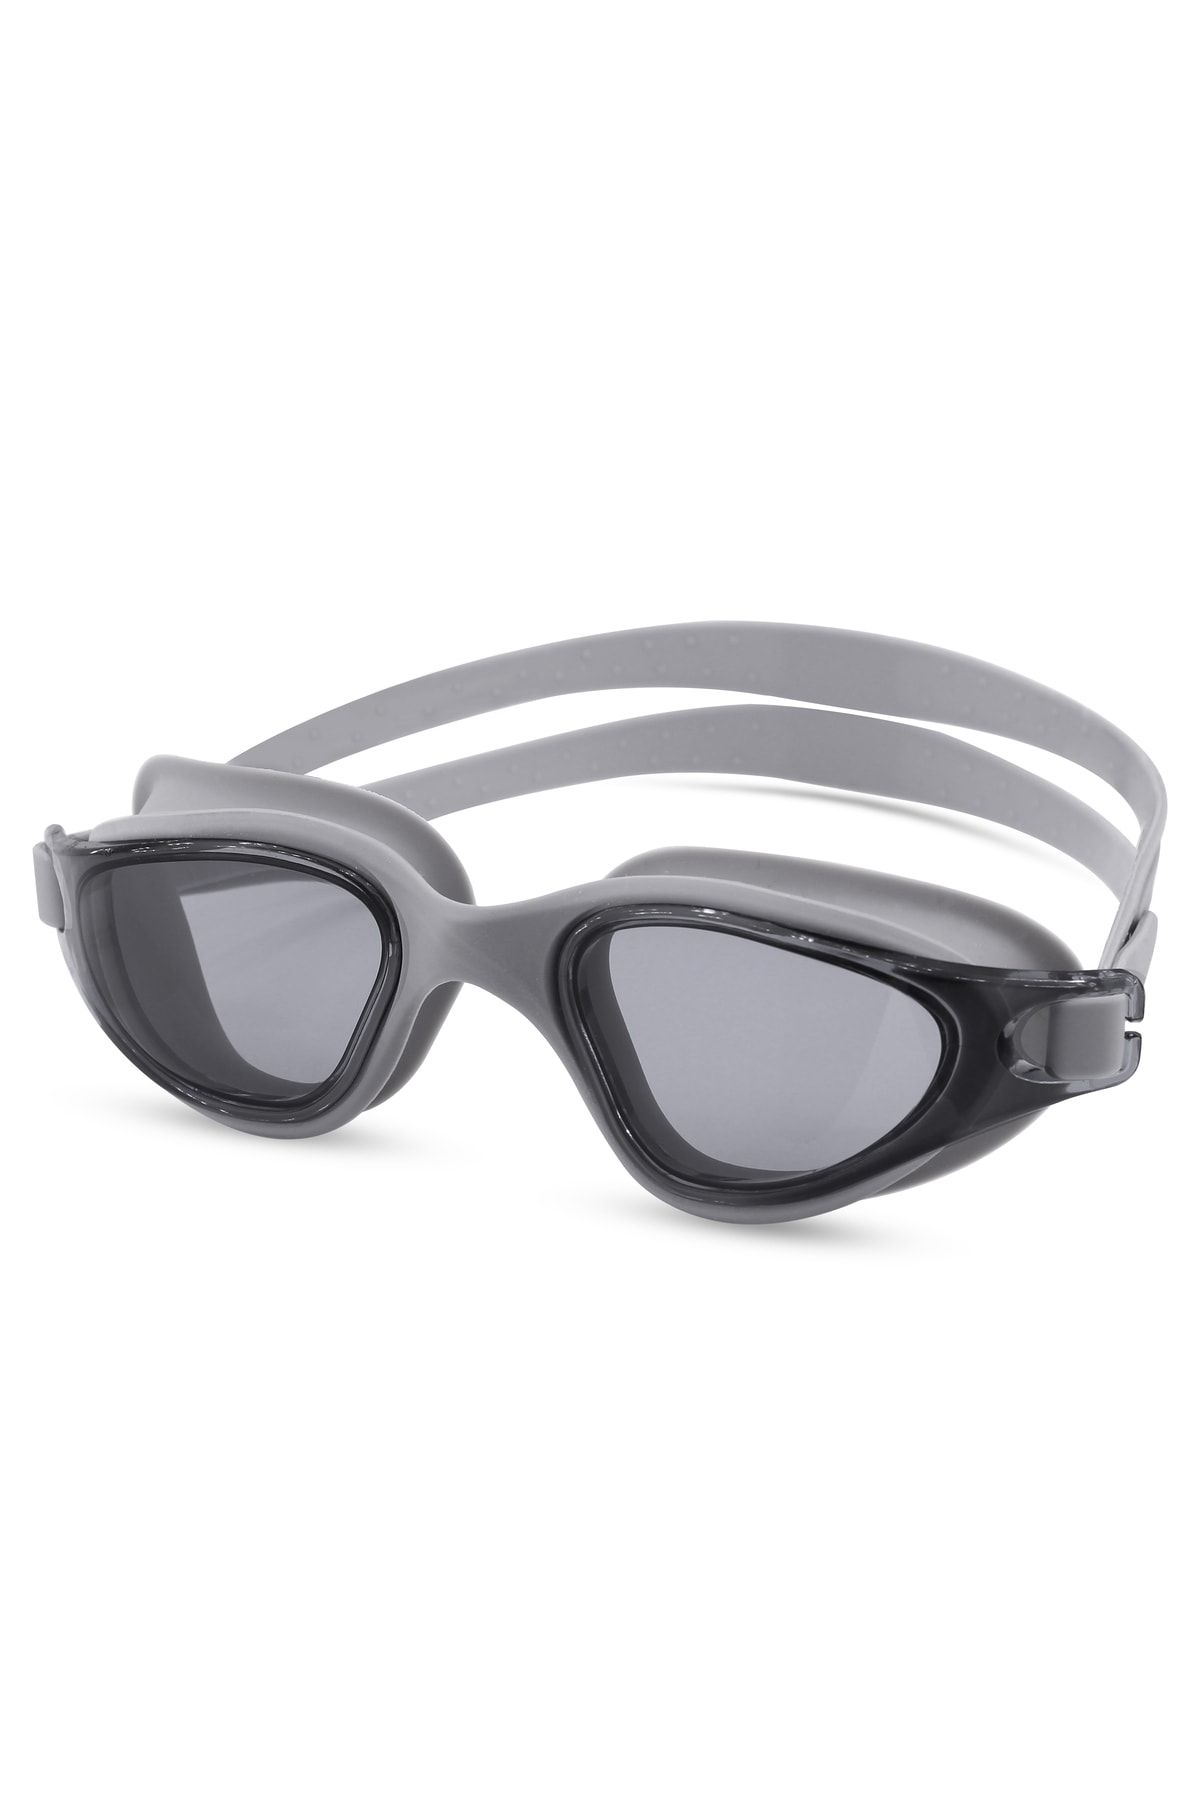 Telvesse Yüzücü Gözlüğü Swimmer Buğu Yapmaz Vakumlu Uv Korumalı Yüzme Havuz Deniz Gözlüğü Gri